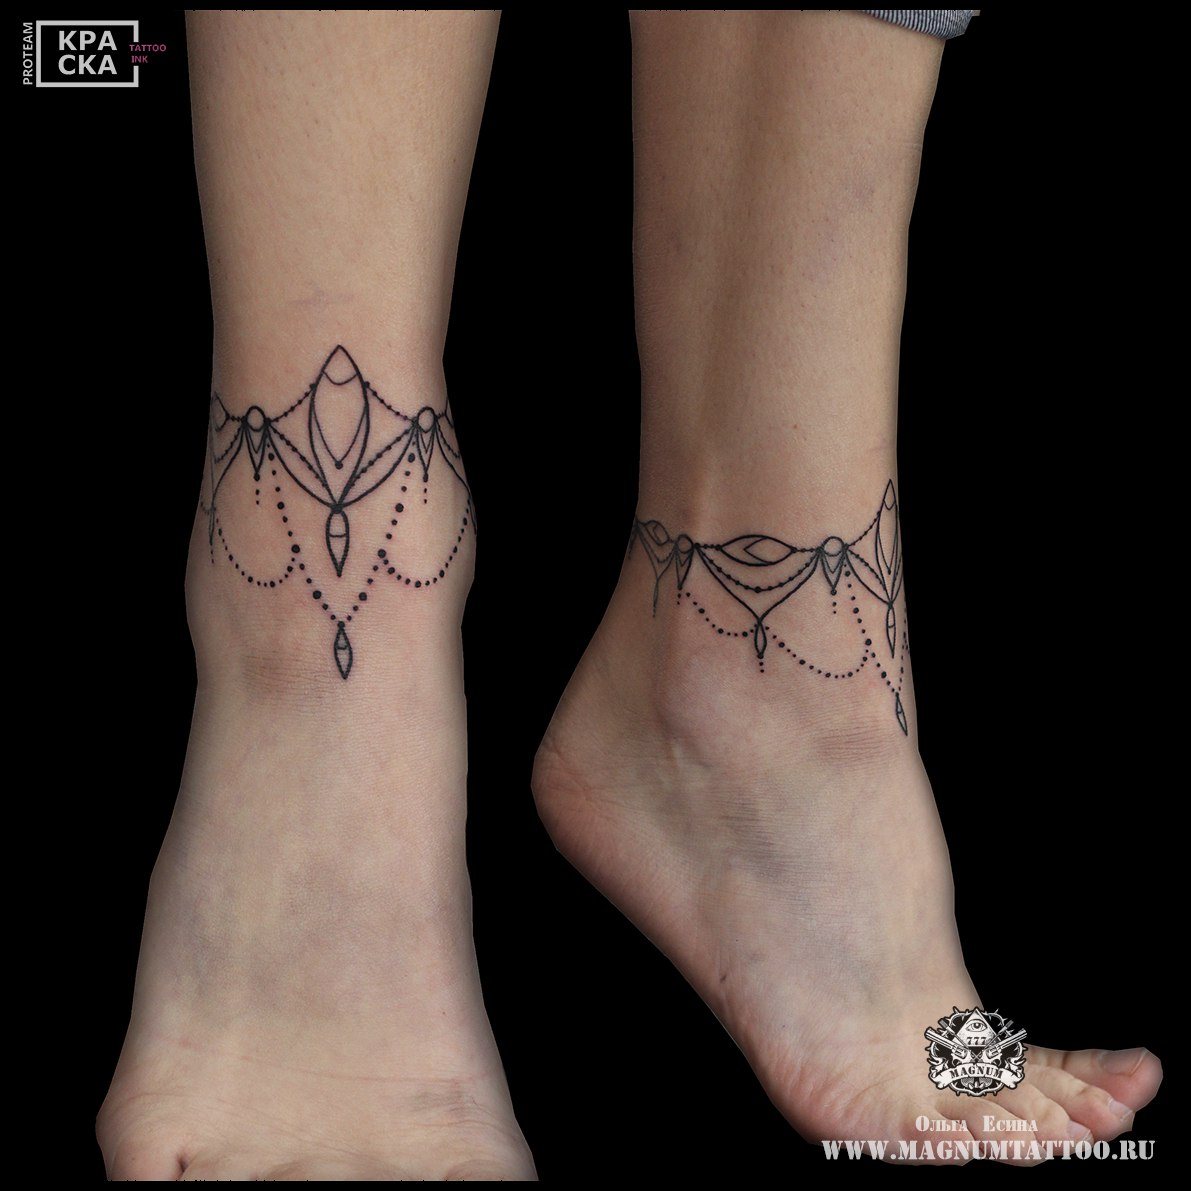 Фото татуировка бантиков на ногах девушки